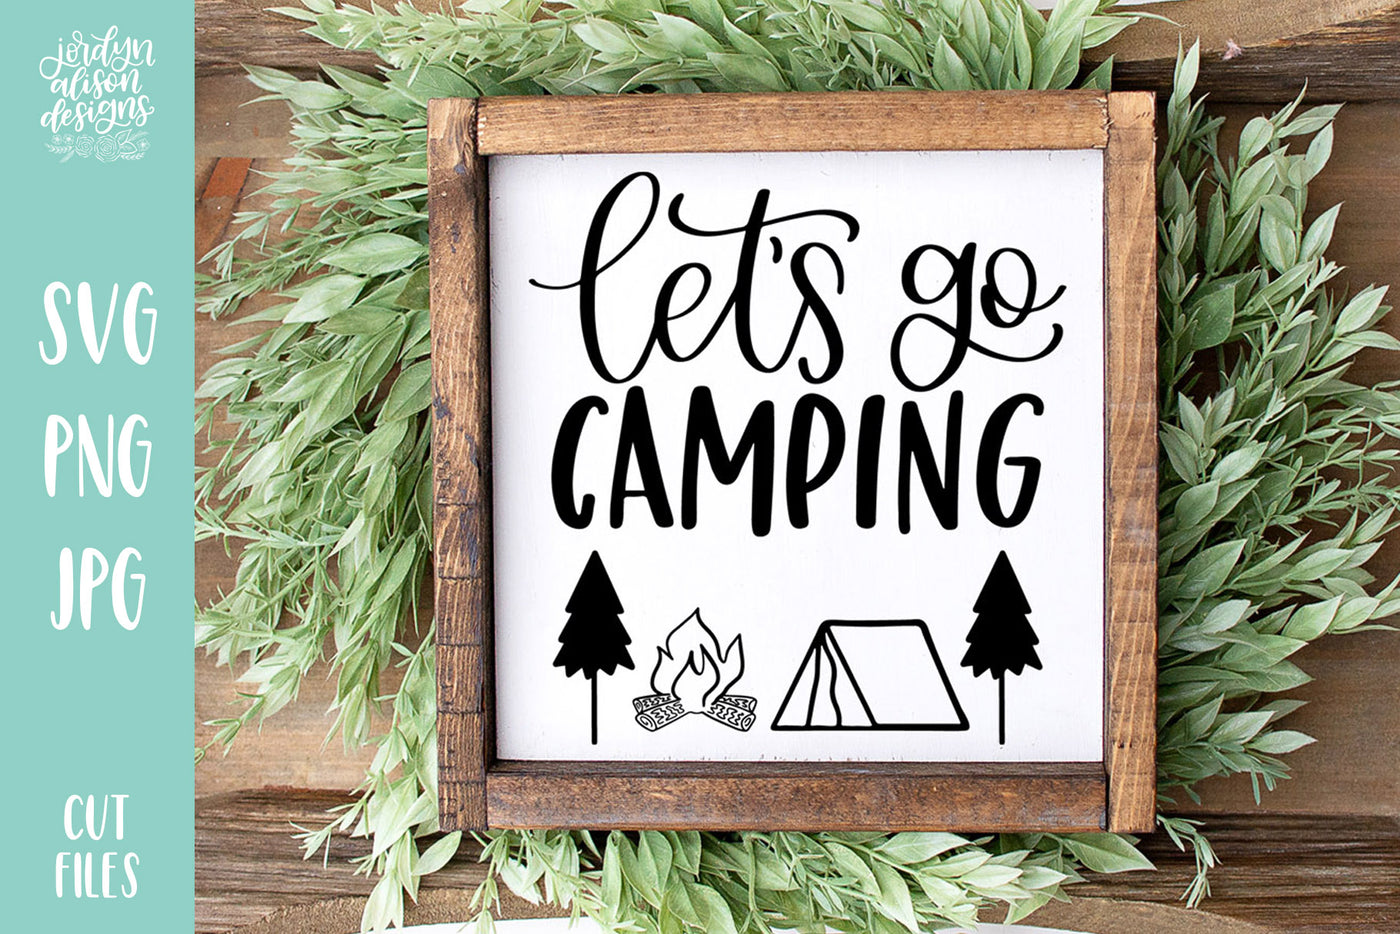 Let's Go Camping V2 SVG